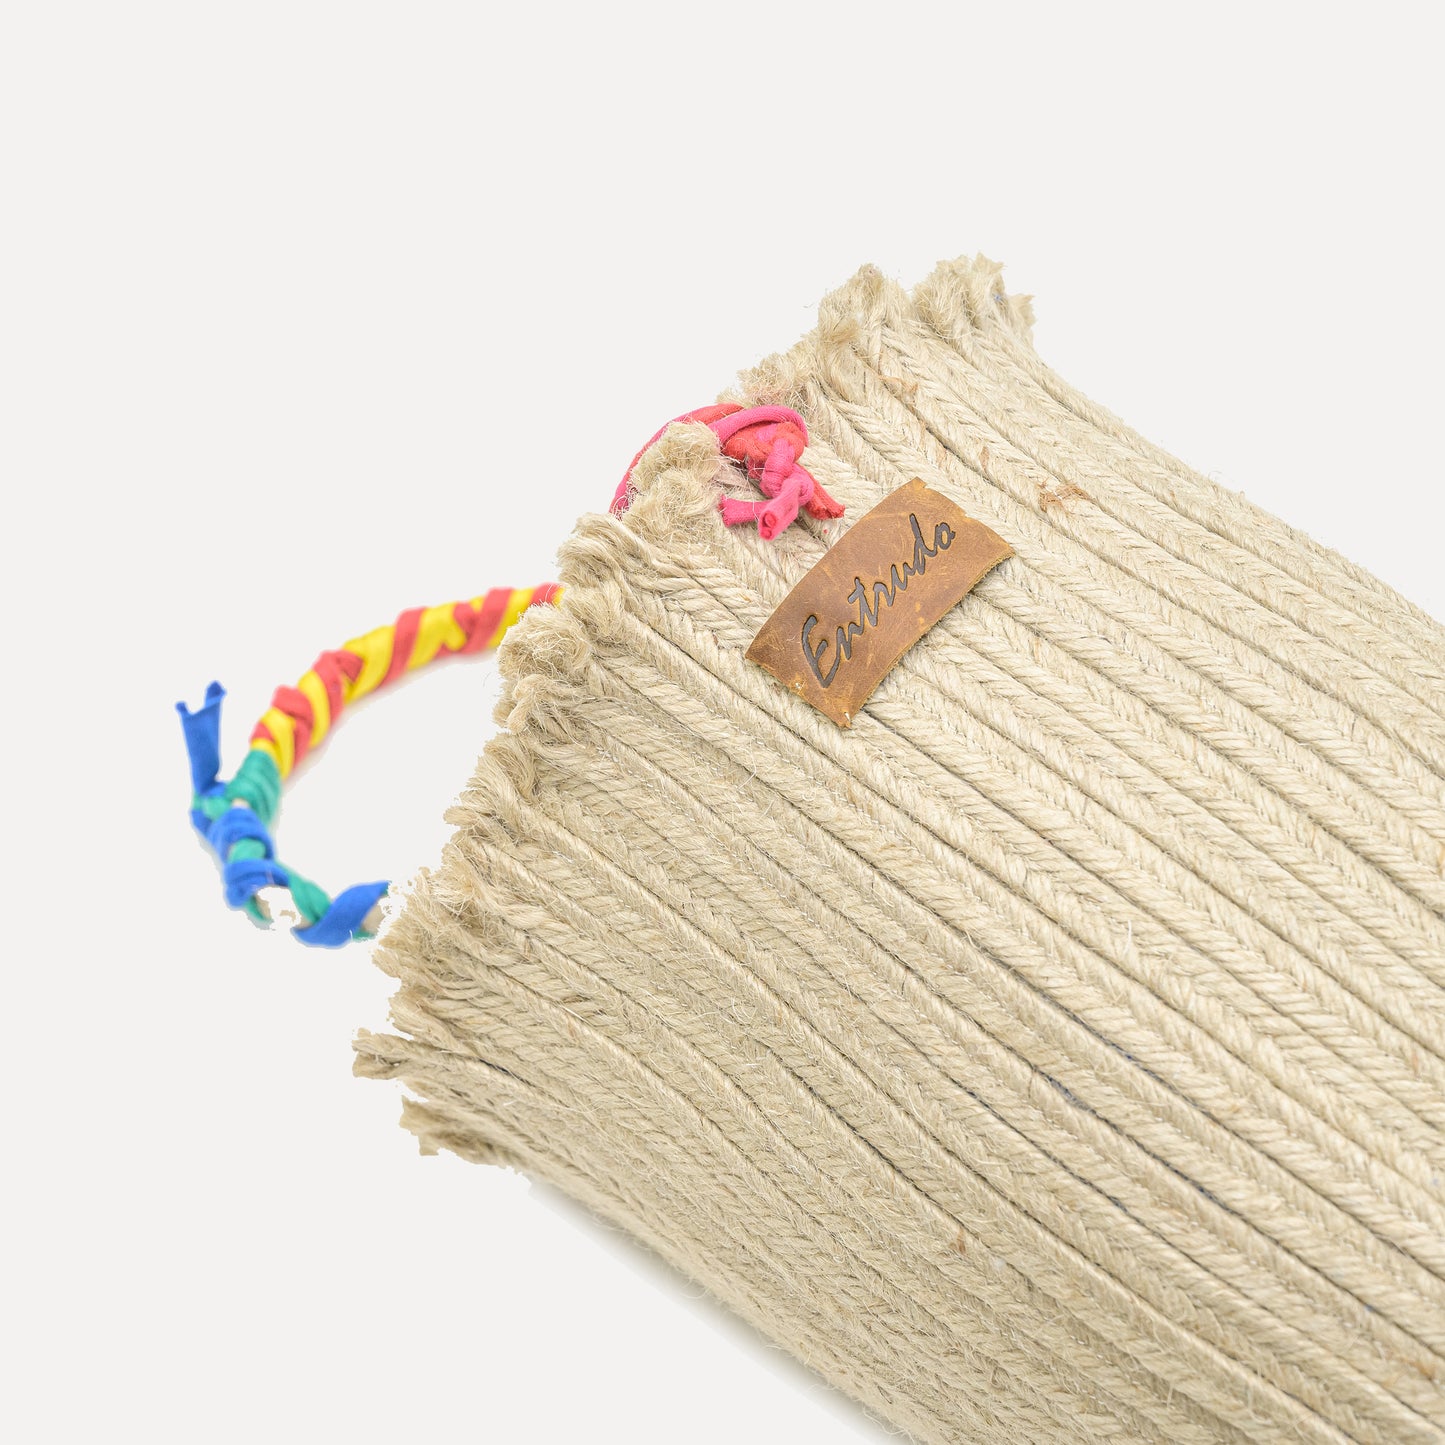 Mós - rope bag with rag